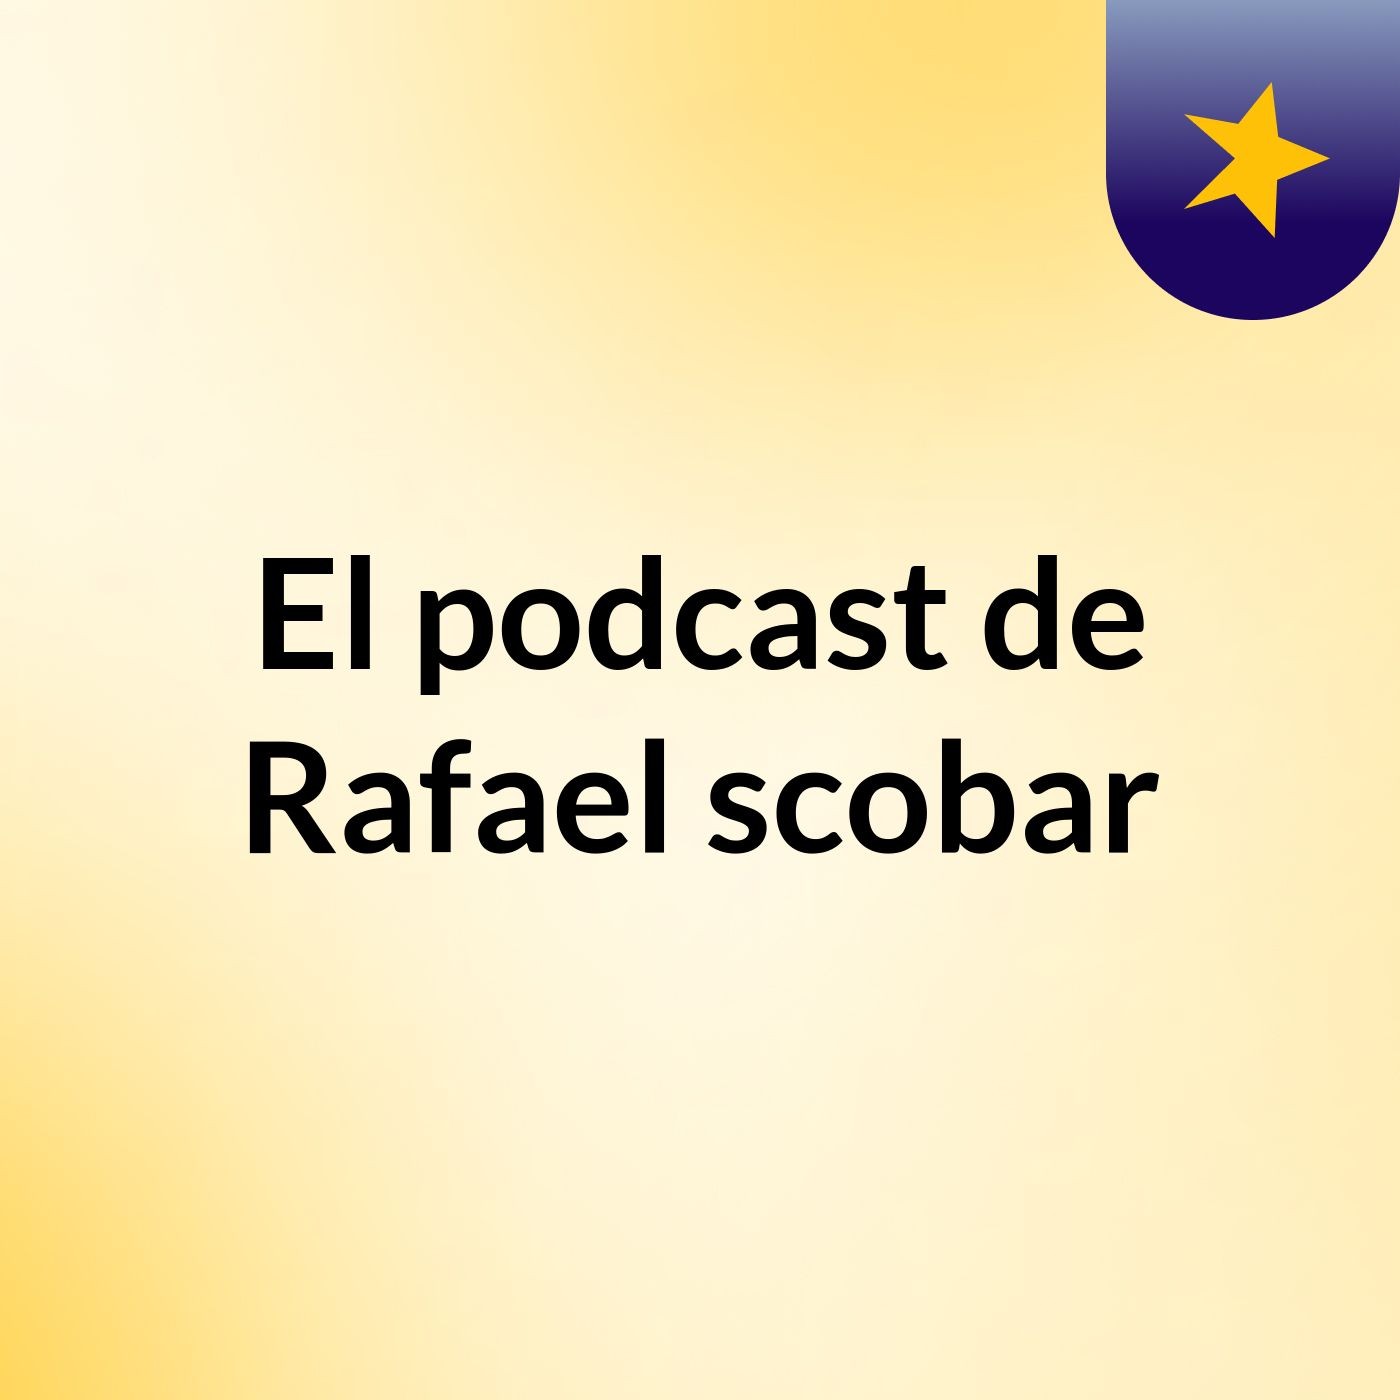 El podcast de Rafael scobar